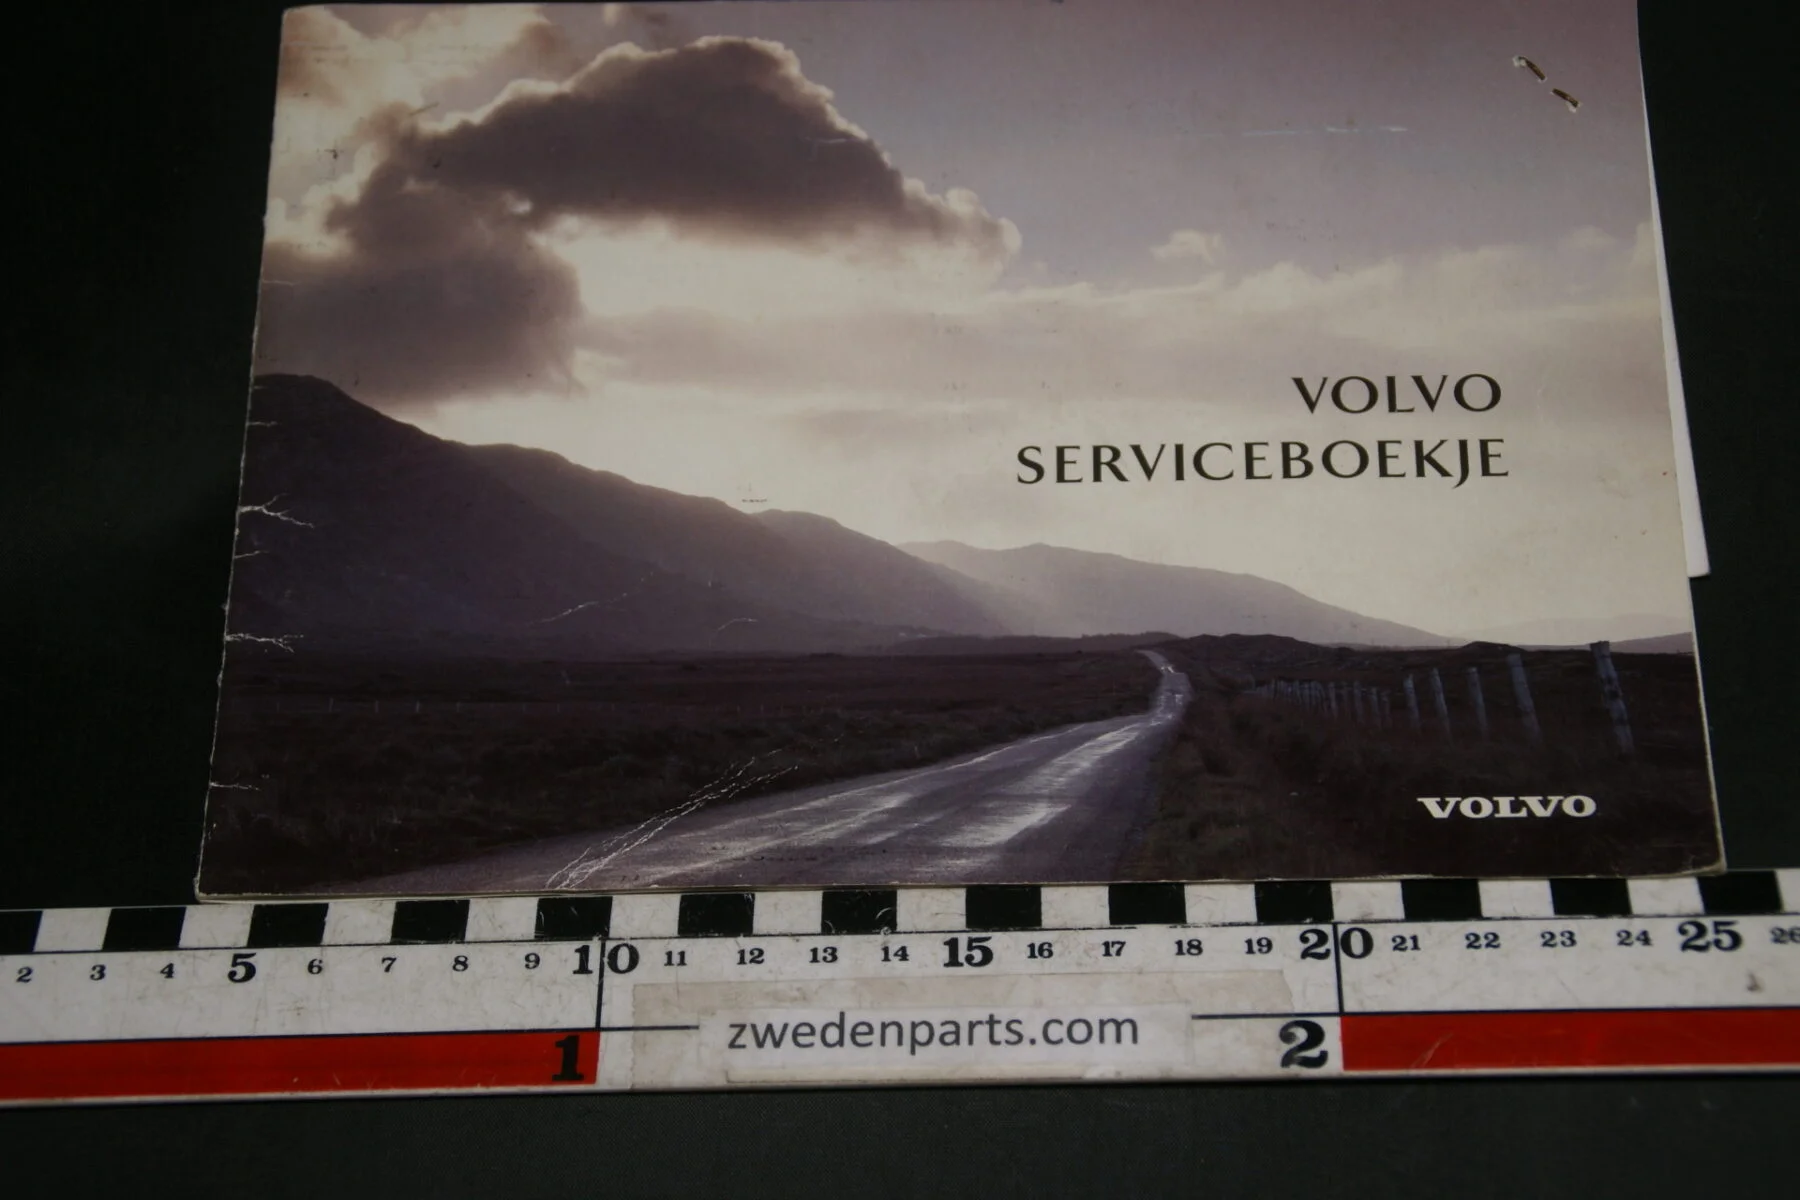 DSC02426 1996 Volvo serviceboekje TP86253